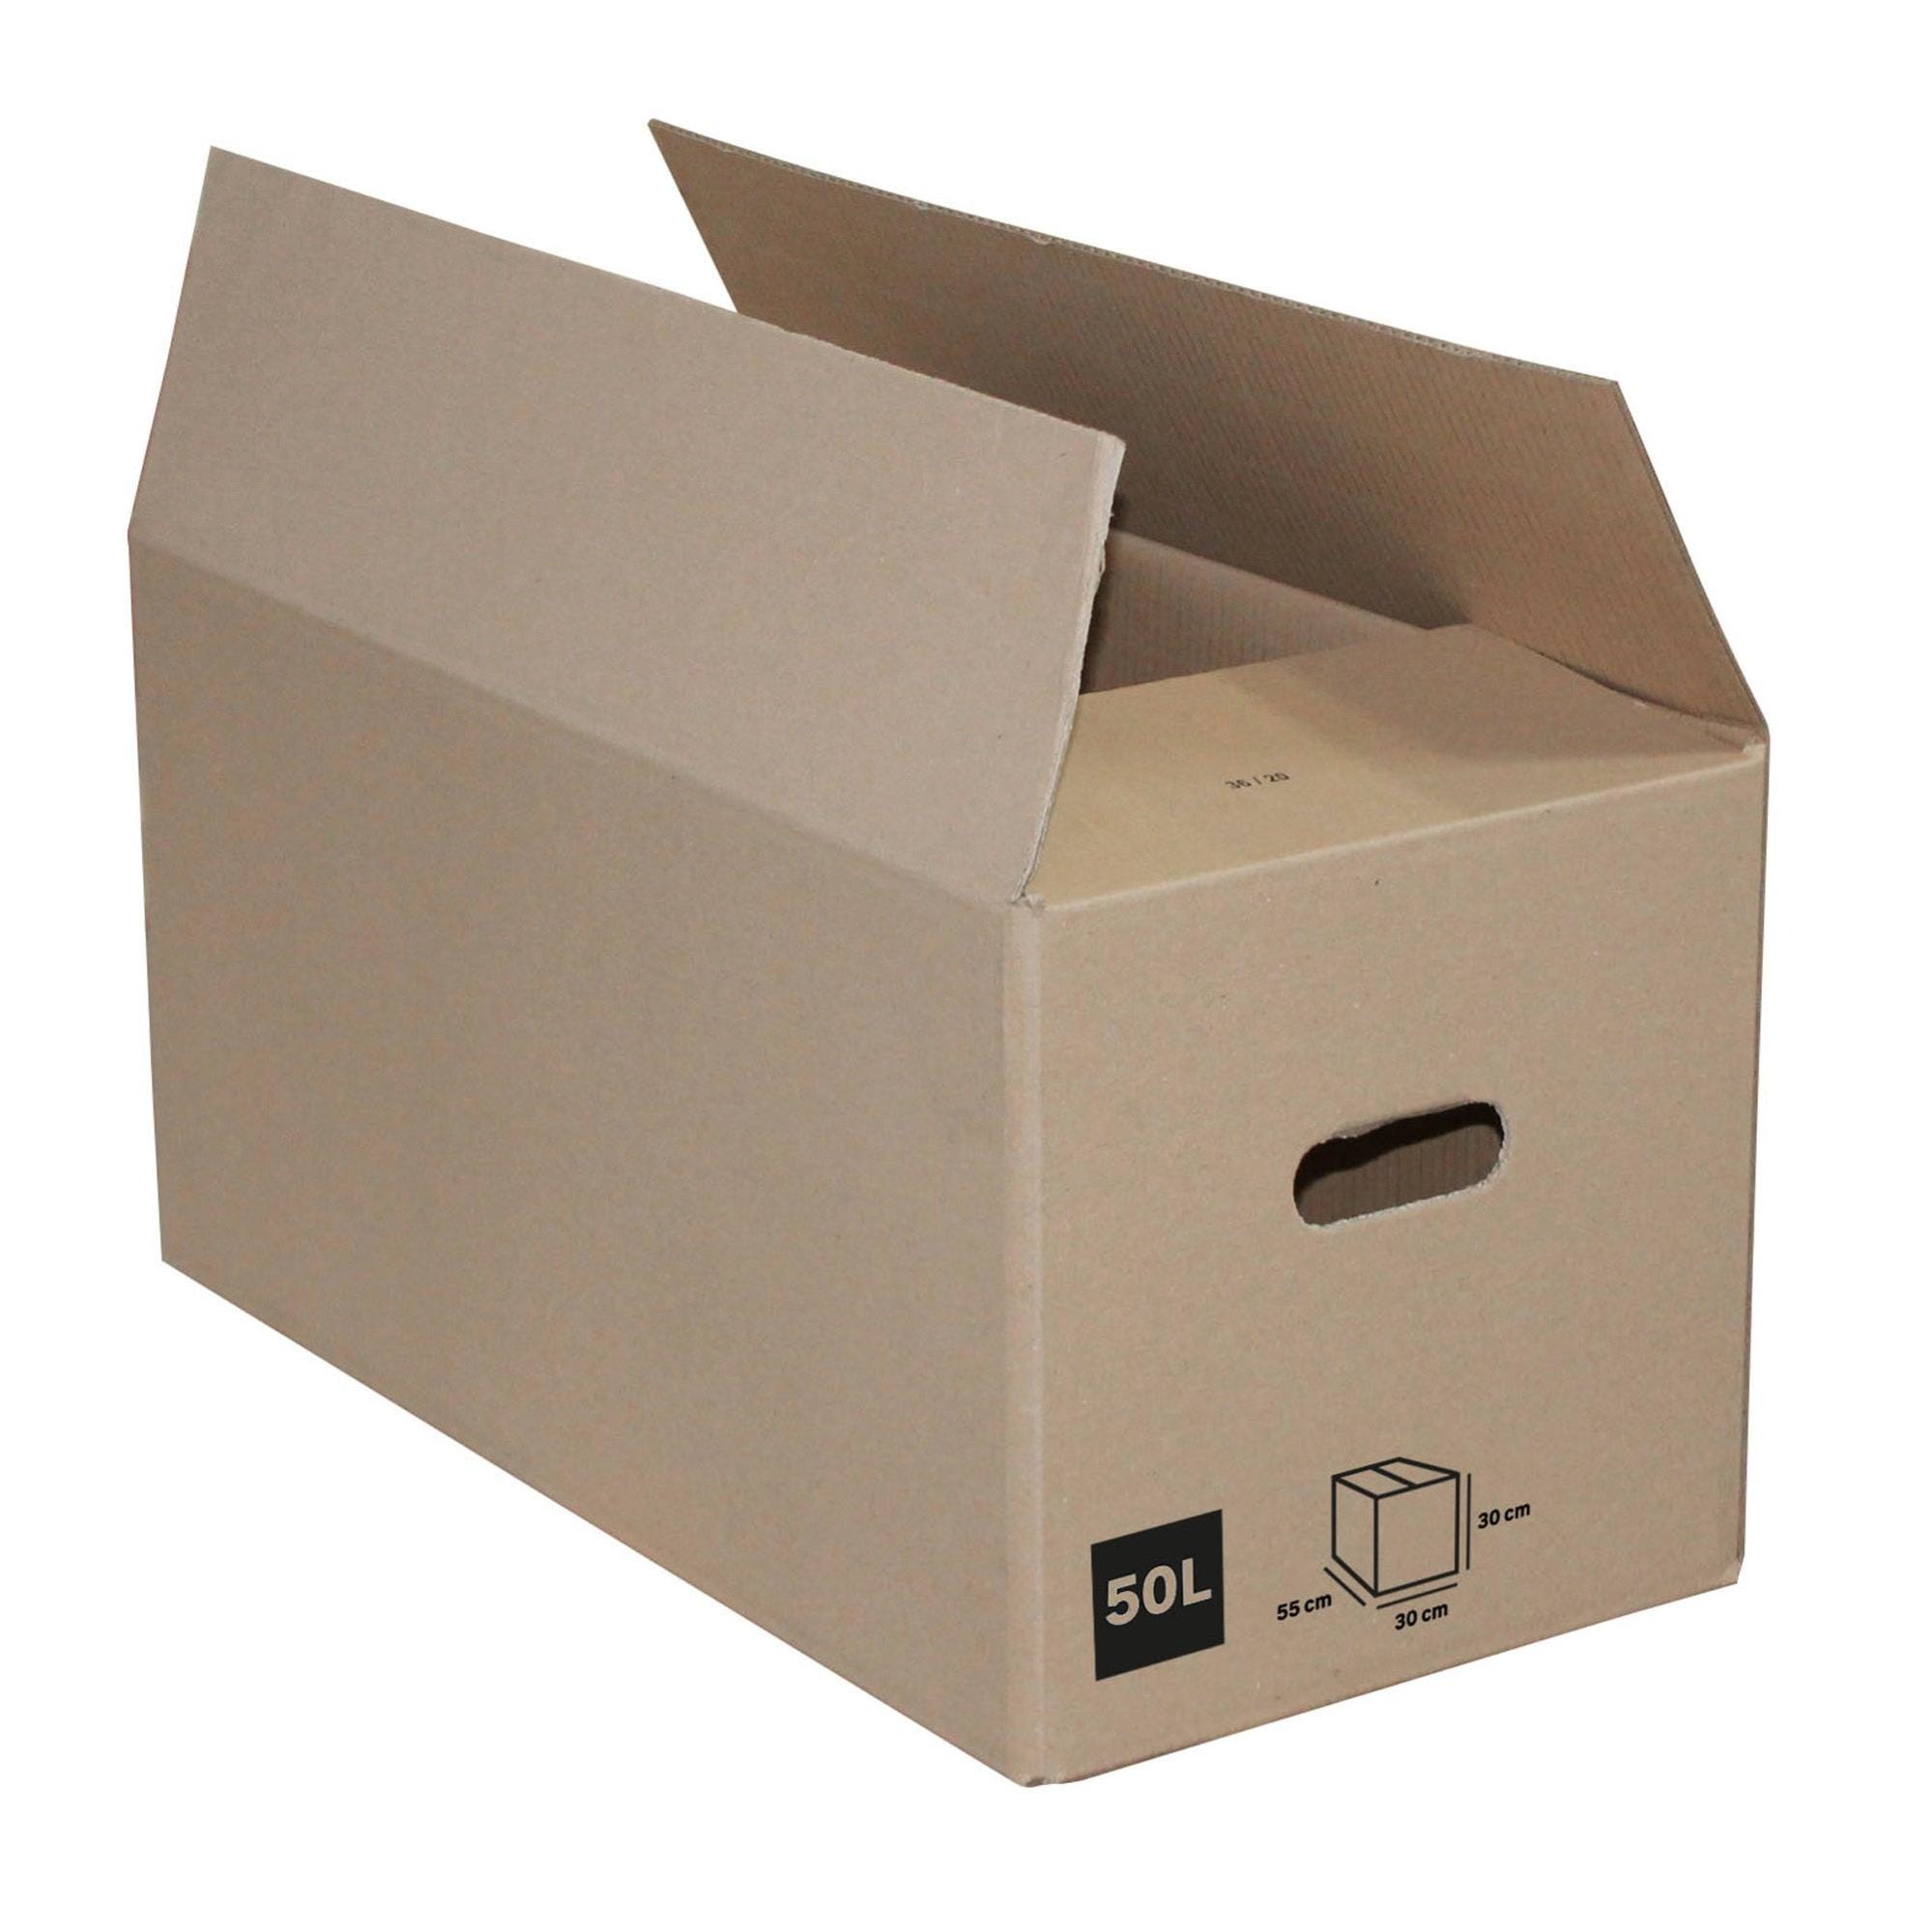 Pack 10 Cajas Carton Almacenaje Mudanza con Asas Extafuertes Anónimas para  Embalaje y Envios 60x40x40 cm